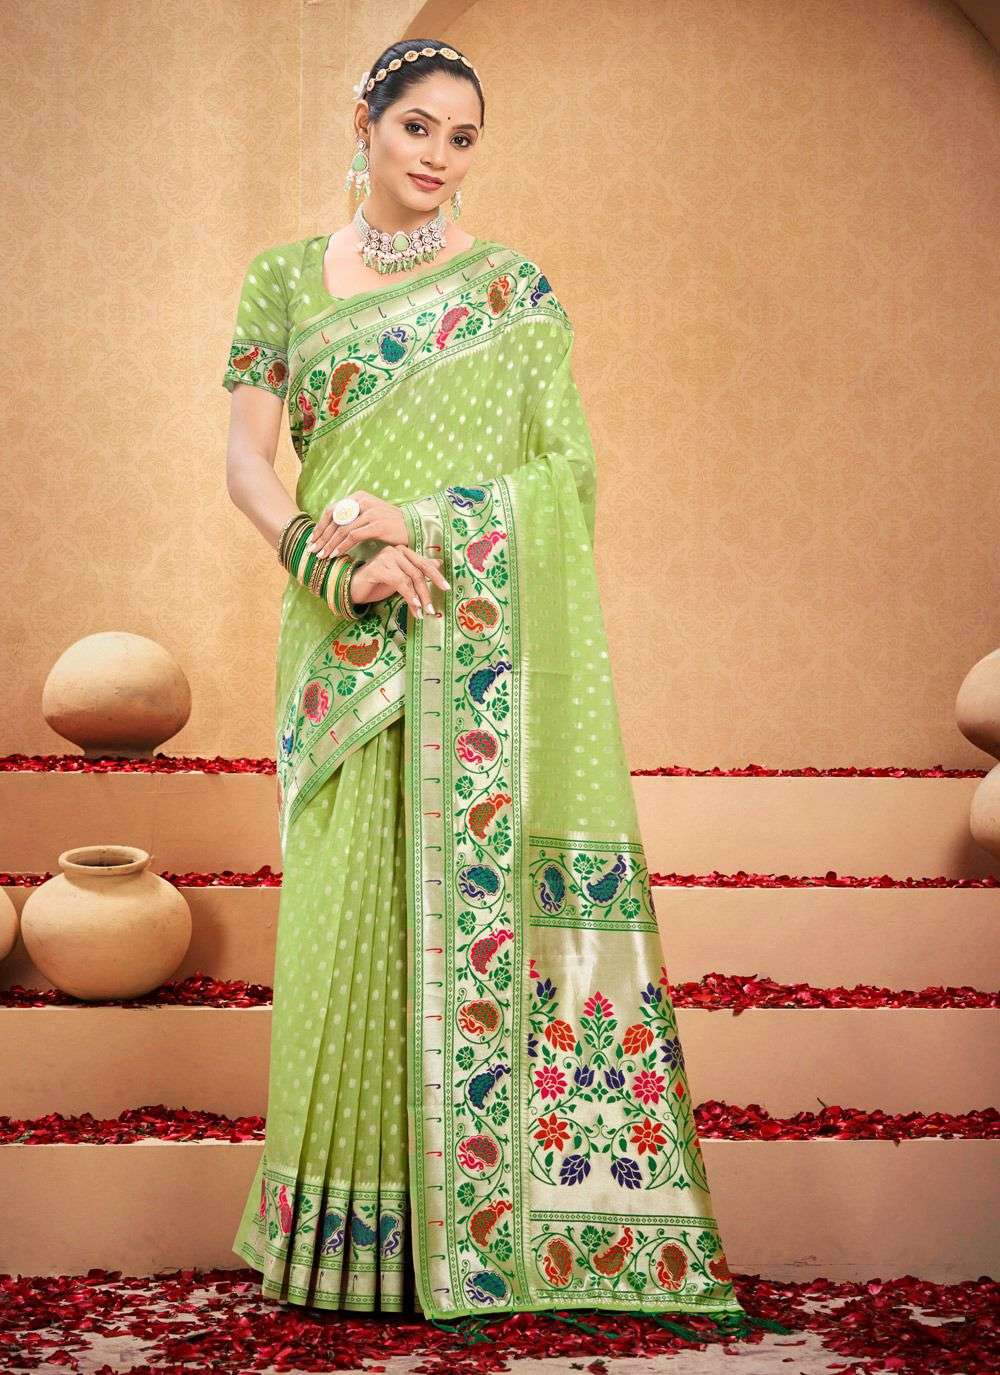 sangam prints bunawat shahi cotton beautiful look saree catalog